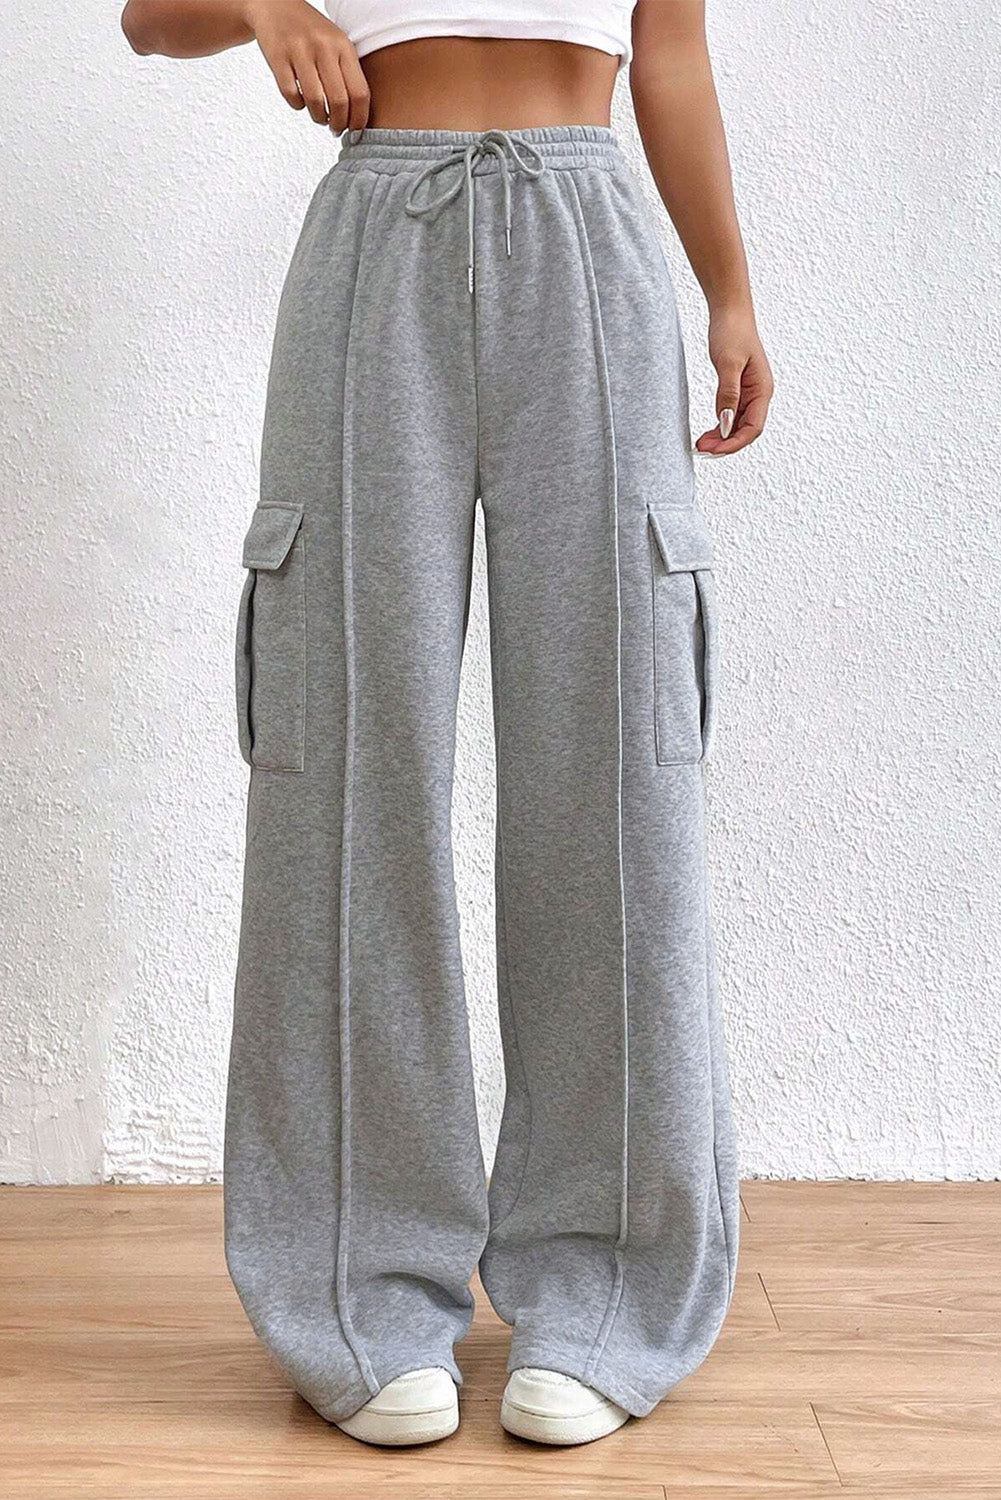 Pantaloni sportivi cargo grigio chiaro con coulisse in vita